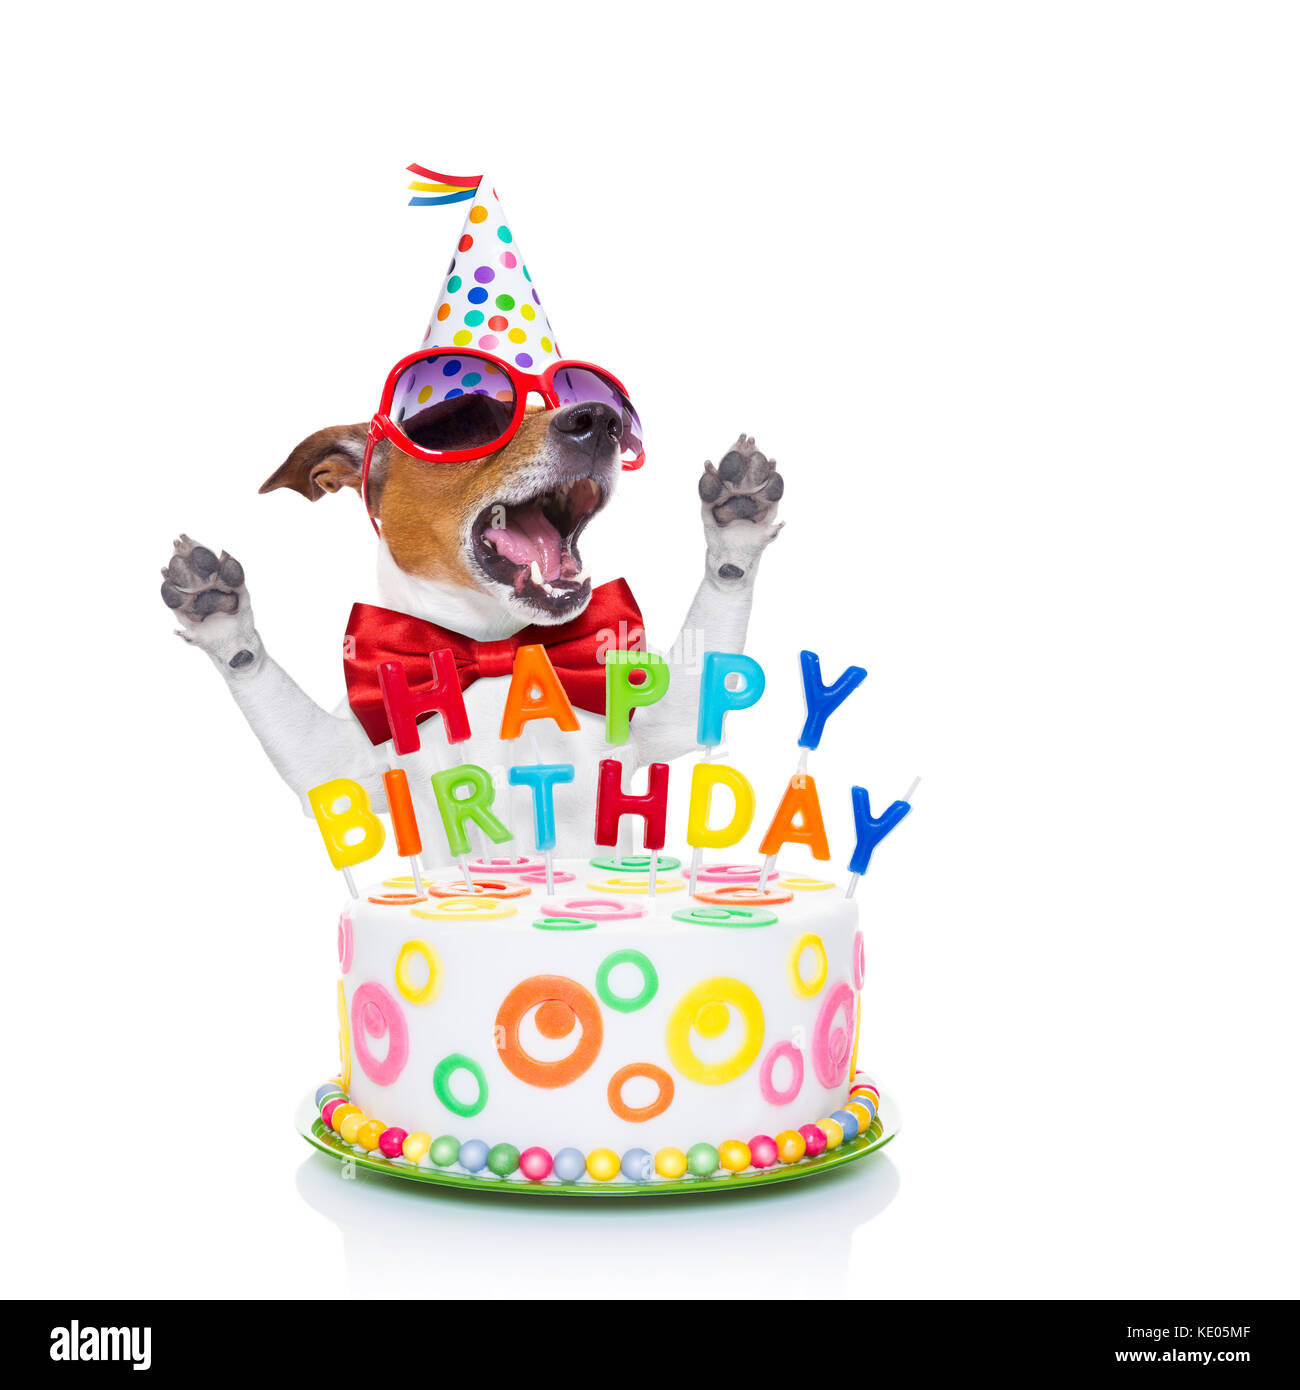 Jack Russell Hund als Überraschung, Gesang geburtstag Lied, hinter lustig  Kuchen, tragen rote Krawatte und Hut, auf weißem Hintergrund  Stockfotografie - Alamy